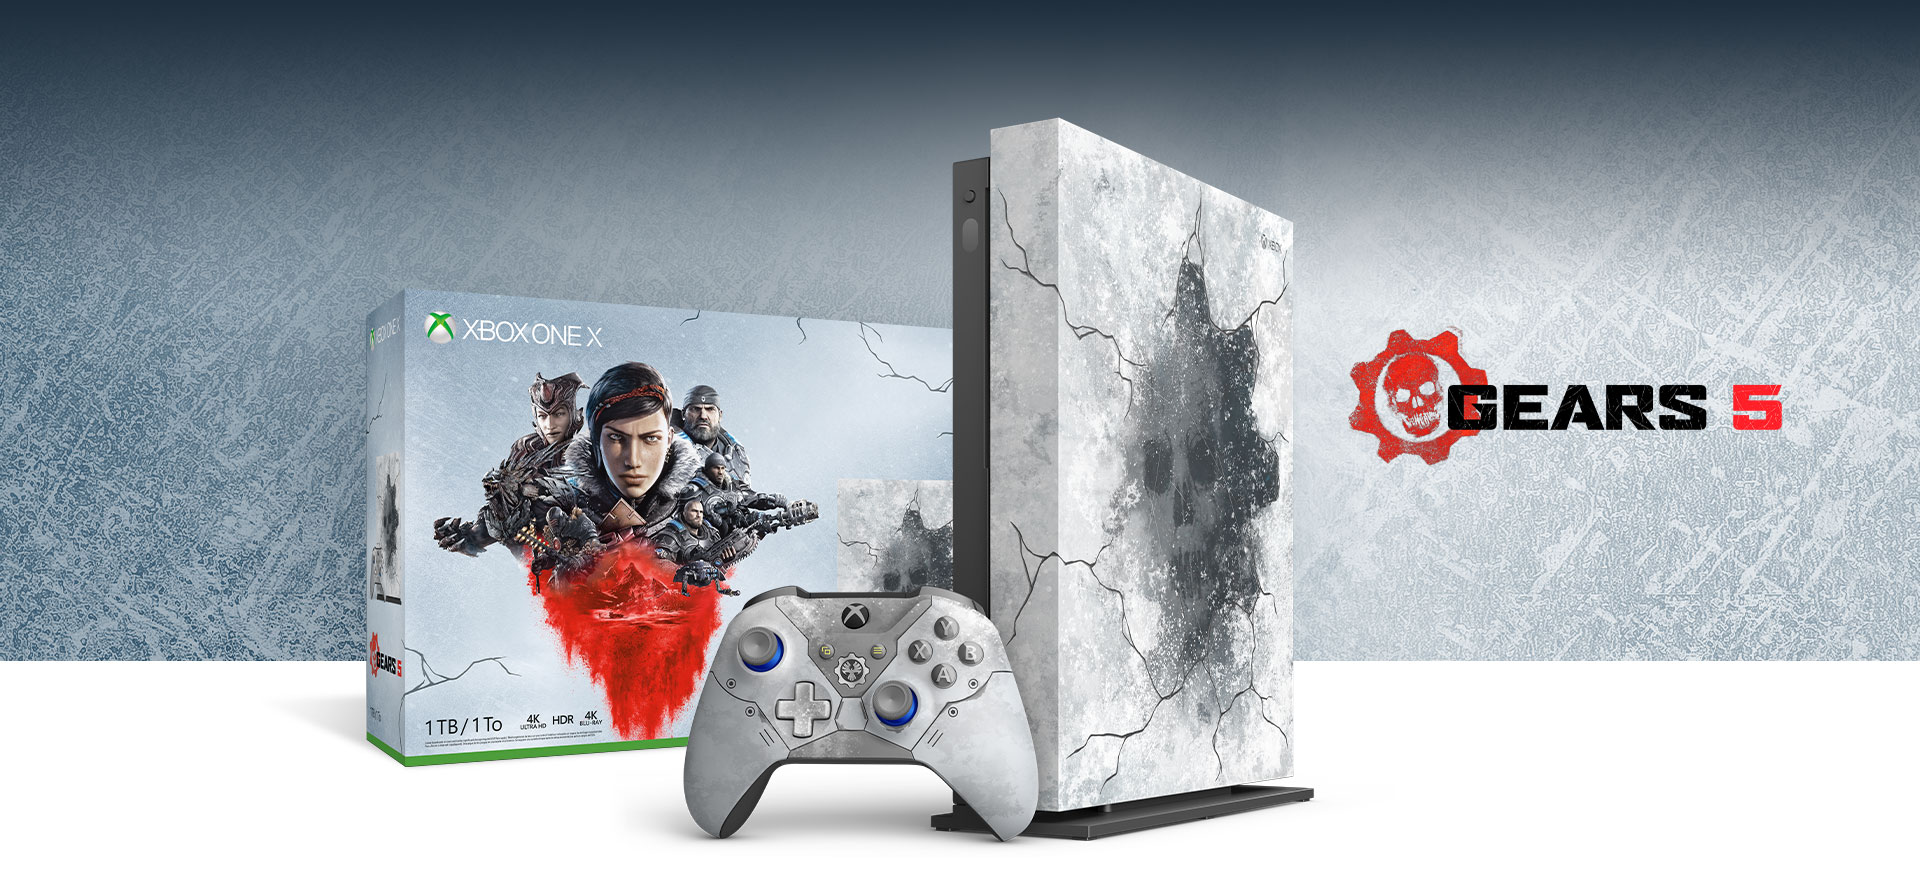 Представлено специальное издание игровой консоли Xbox One X для поклонников игры Gears of War